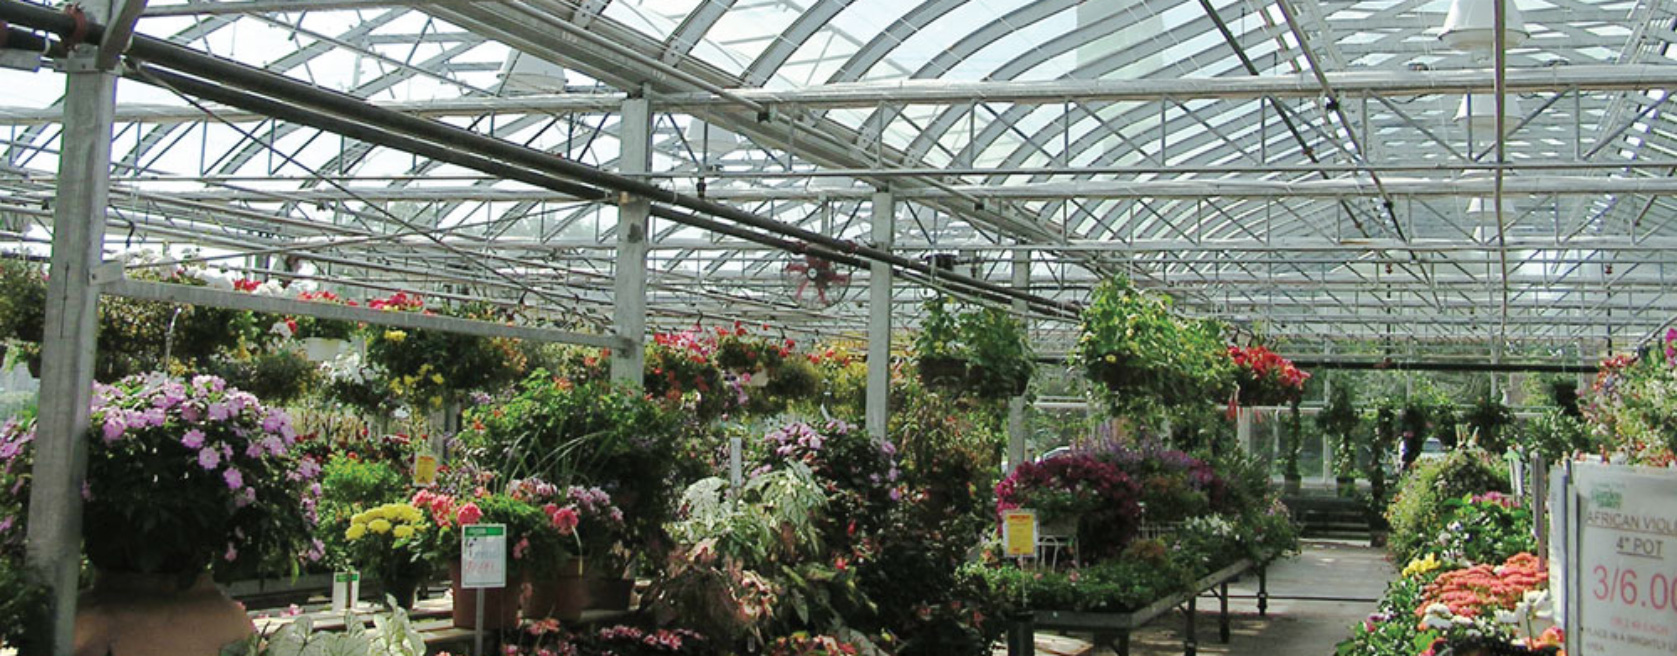 inside of a garden center greenhouse